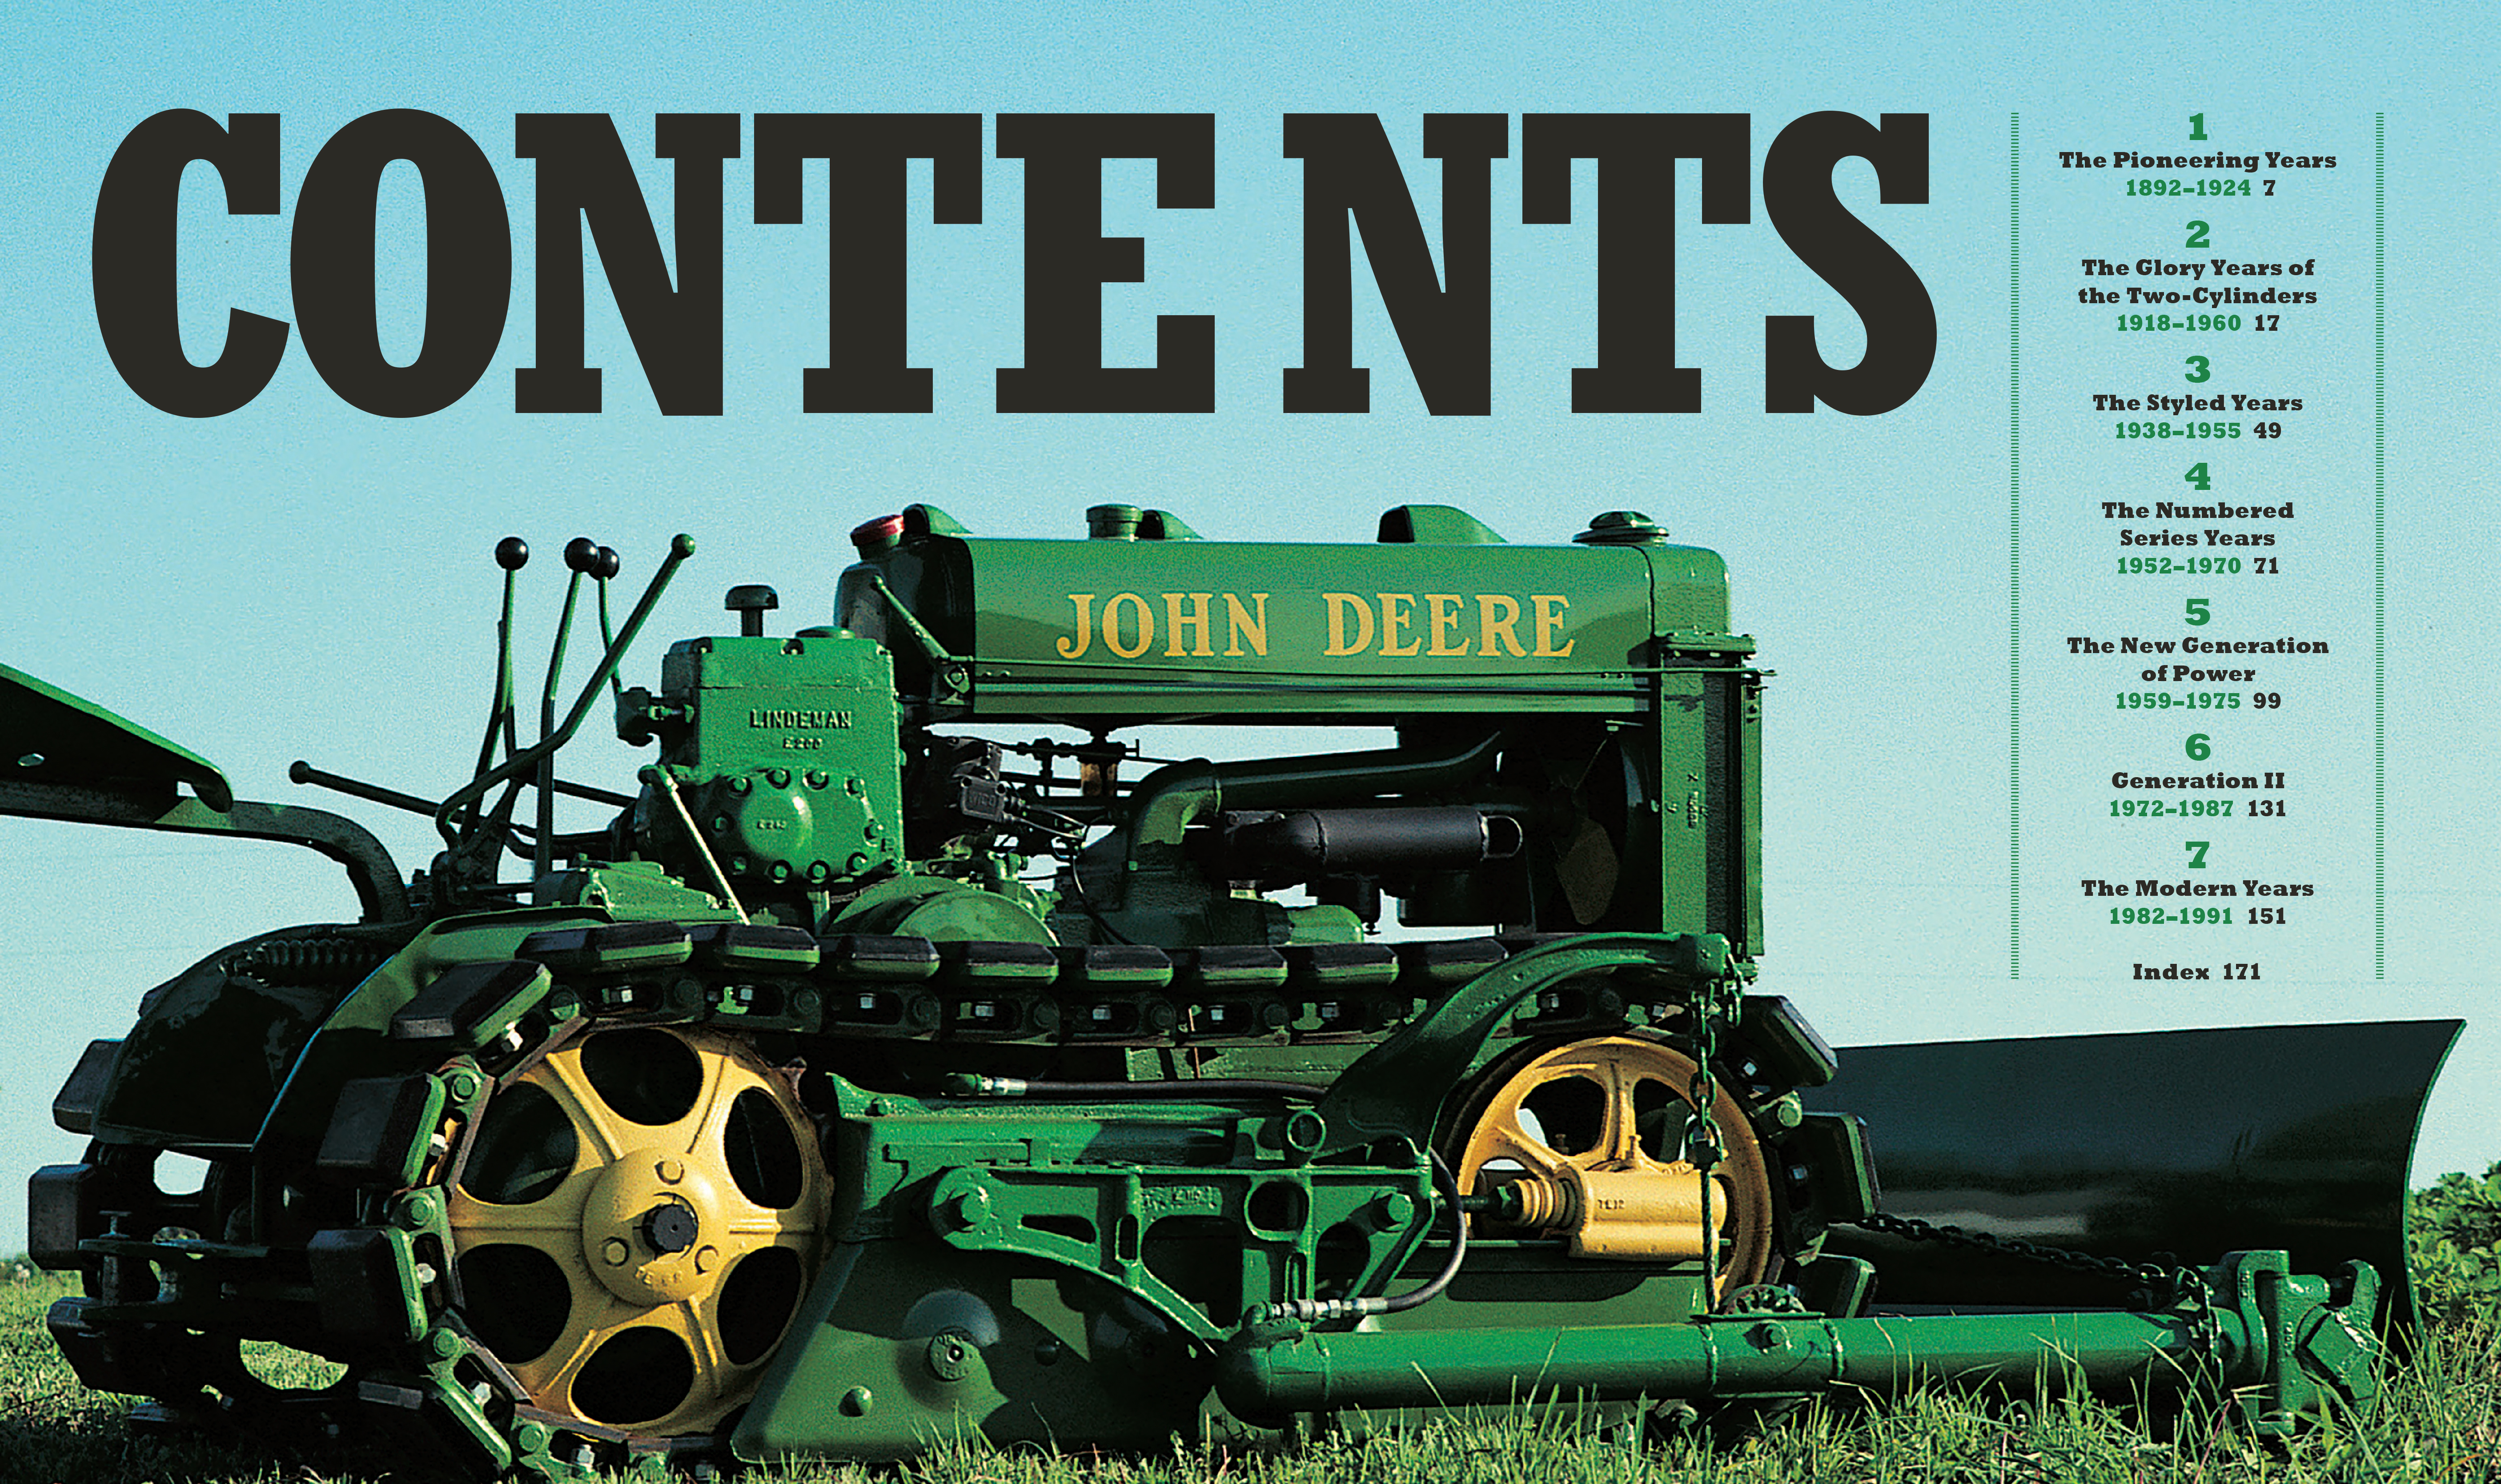 The Complete Book of Classic John Deere Tractors